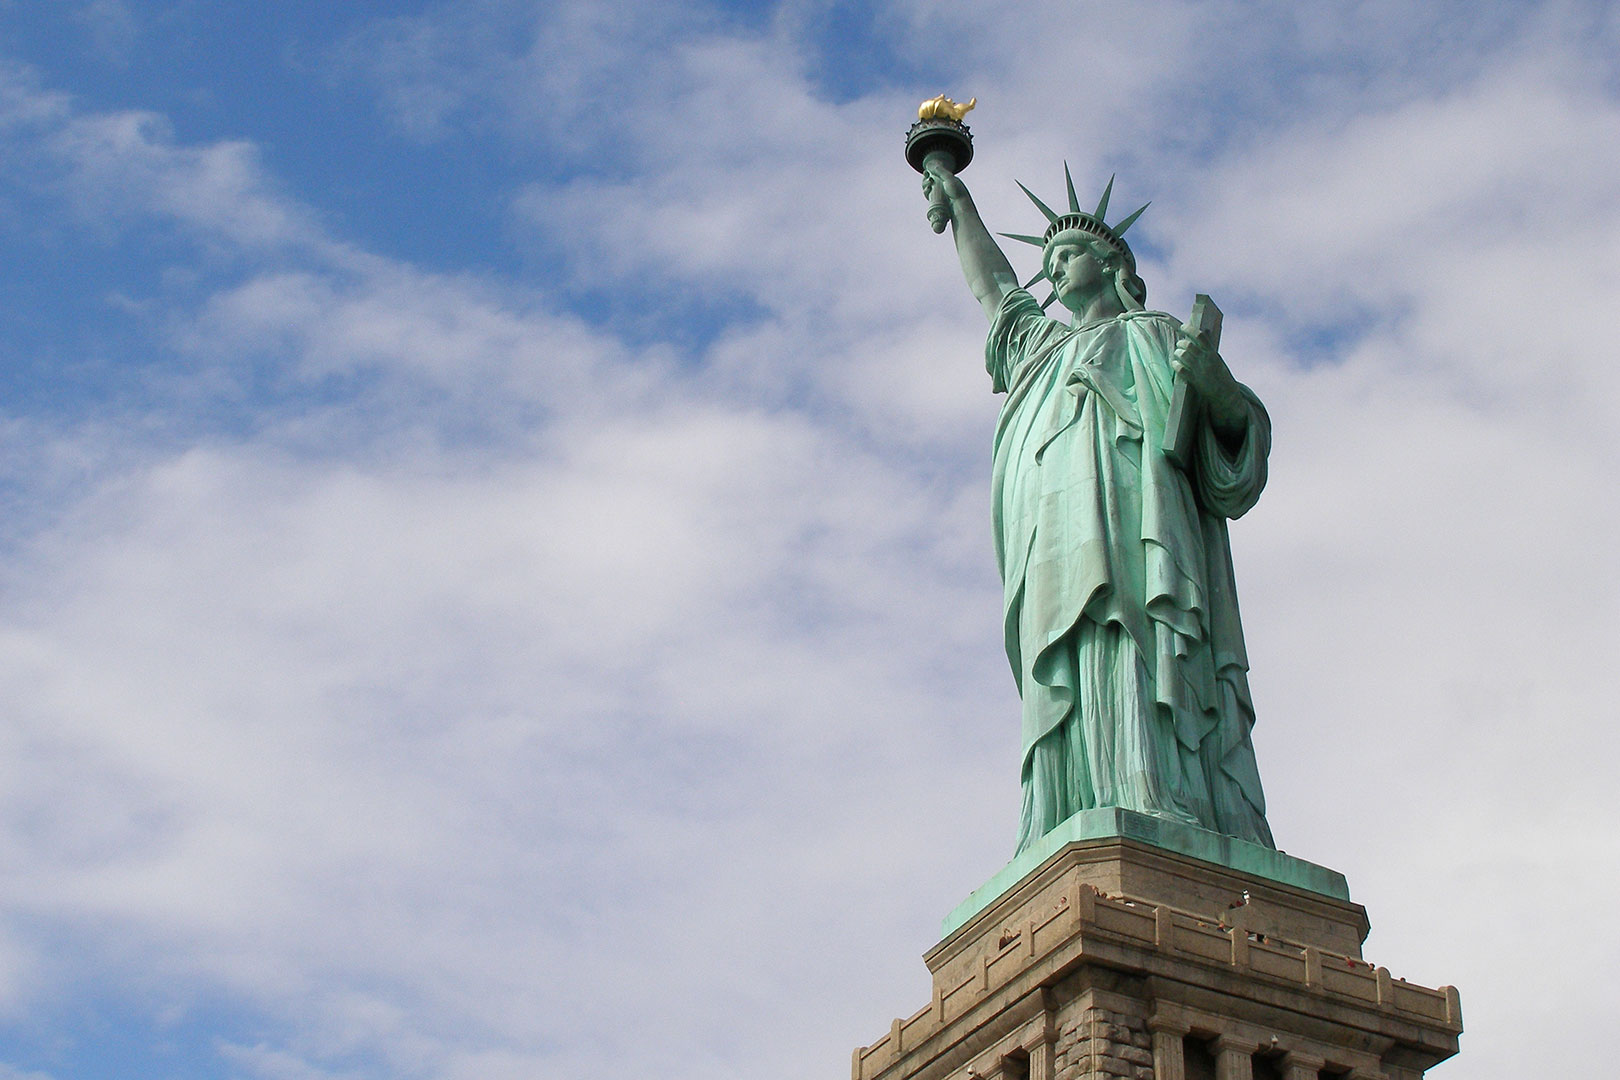 Statue of Liberty, NYC, NY